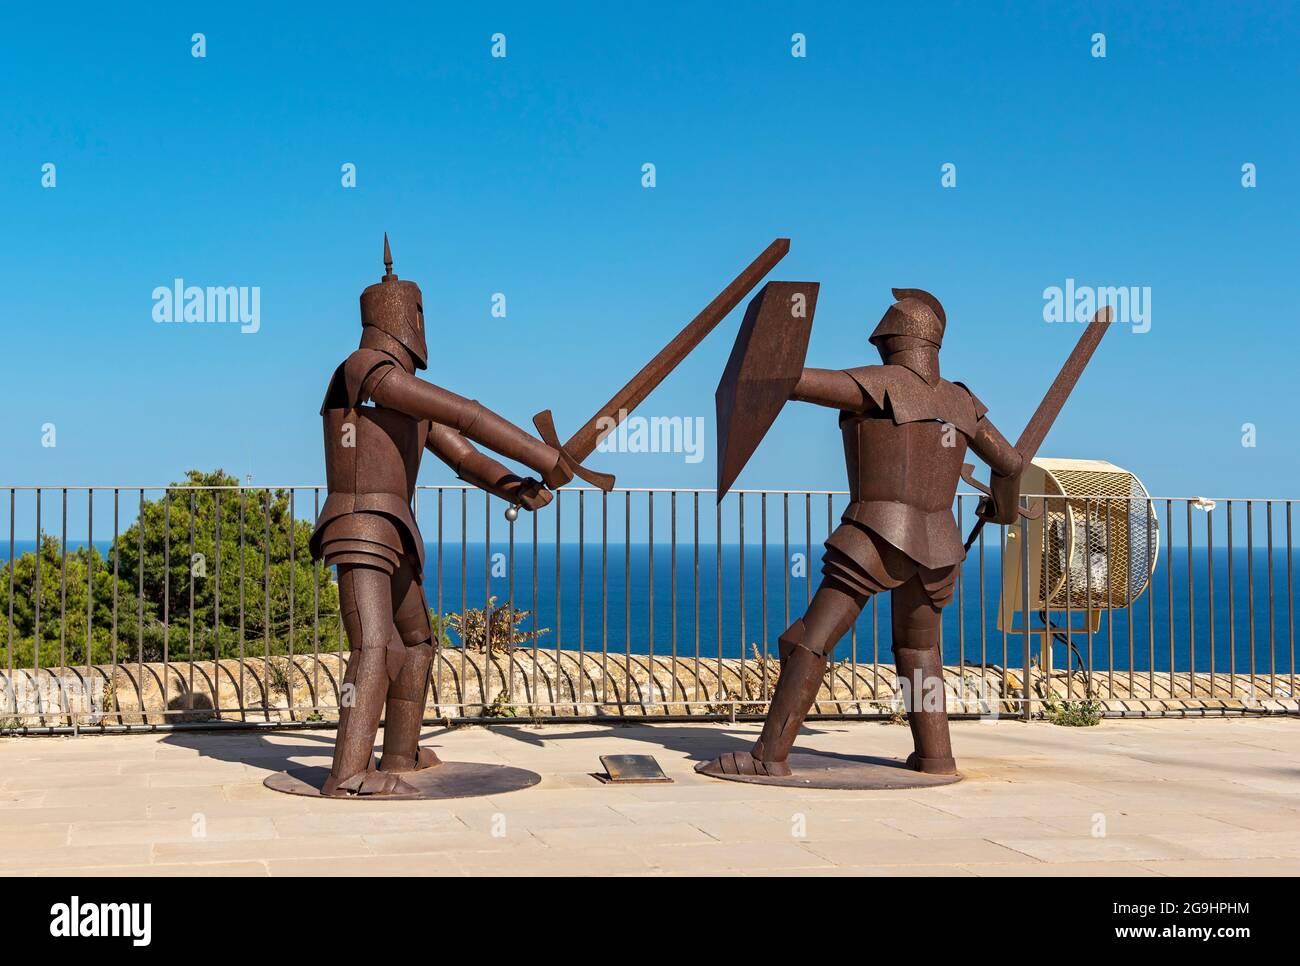 Metallstatuen von Rittern in Rüstung, Burg Santa Bárbara, Alicante (Alacant), Spanien Stockfoto